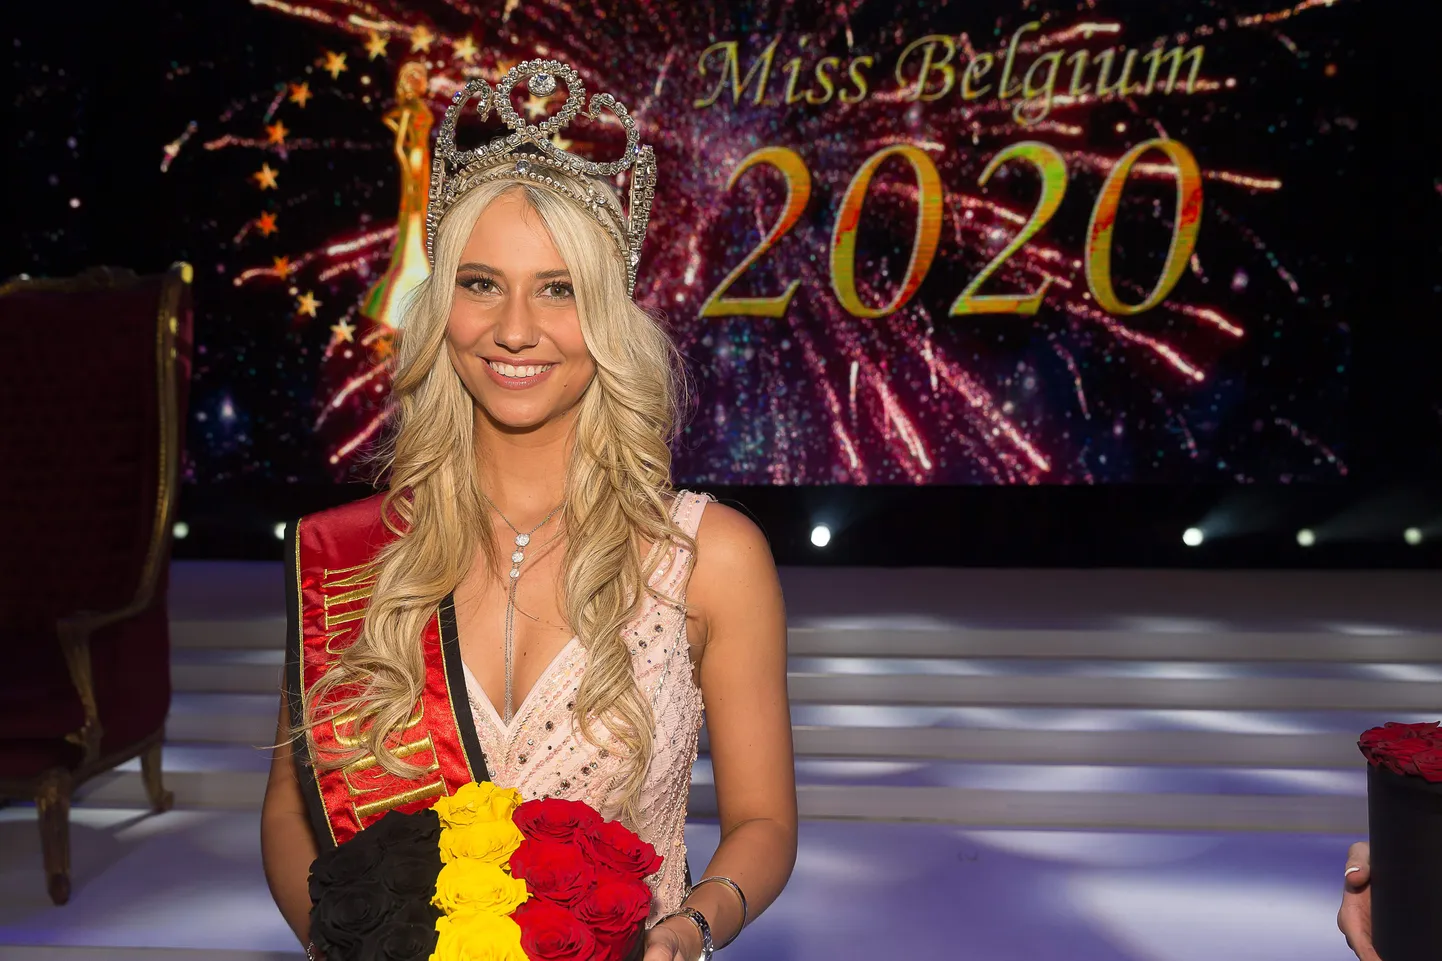 Miss Belgia 2020 Celine Van Ouytsel.